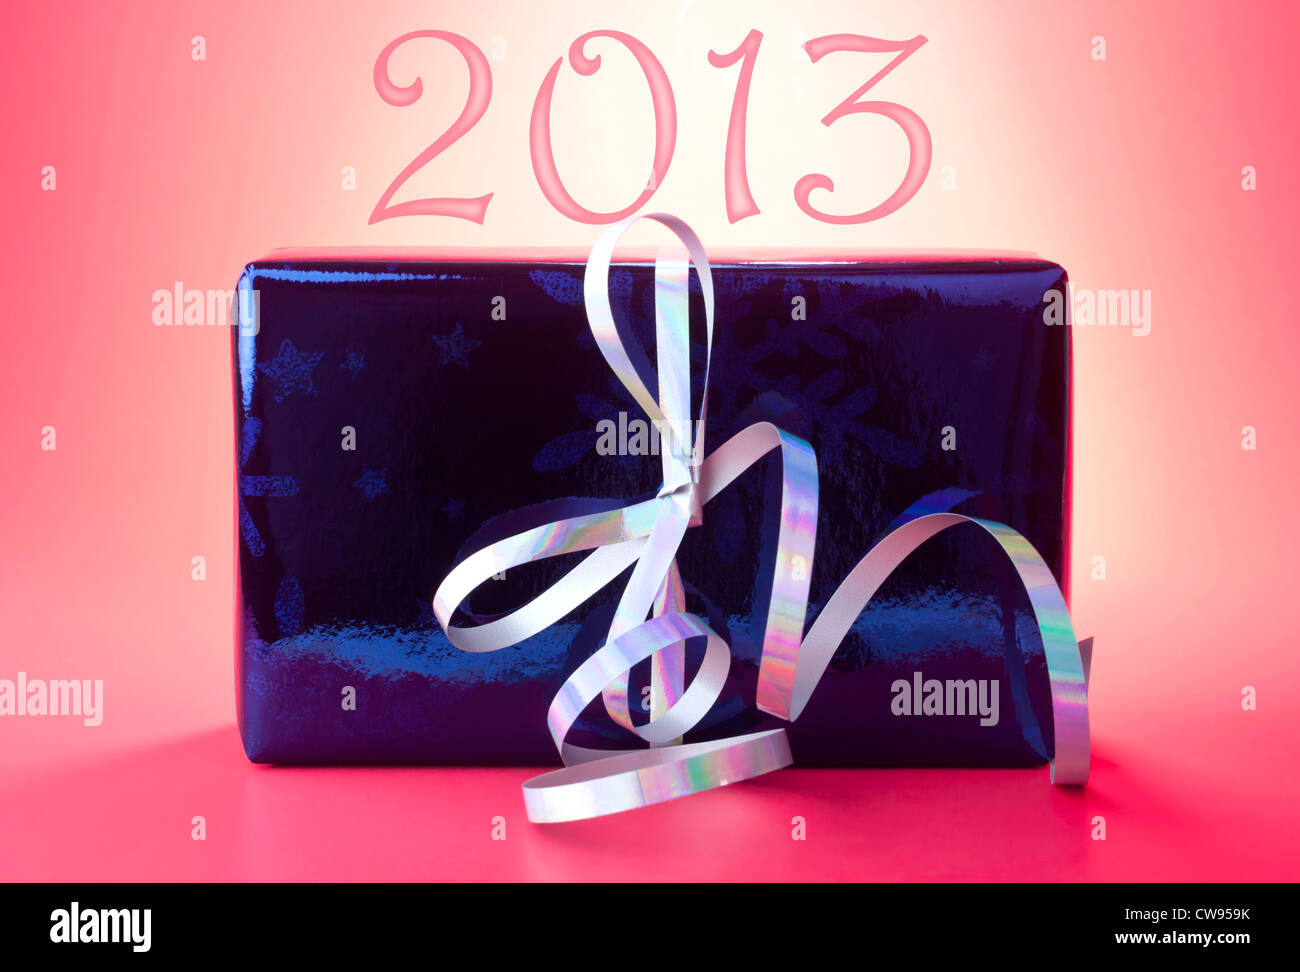 2013 Nouvelle année présent ou un cadeau enveloppé dans du papier d'emballage brillant bleu argenté avec ruban frisé contre fond rouge. Banque D'Images